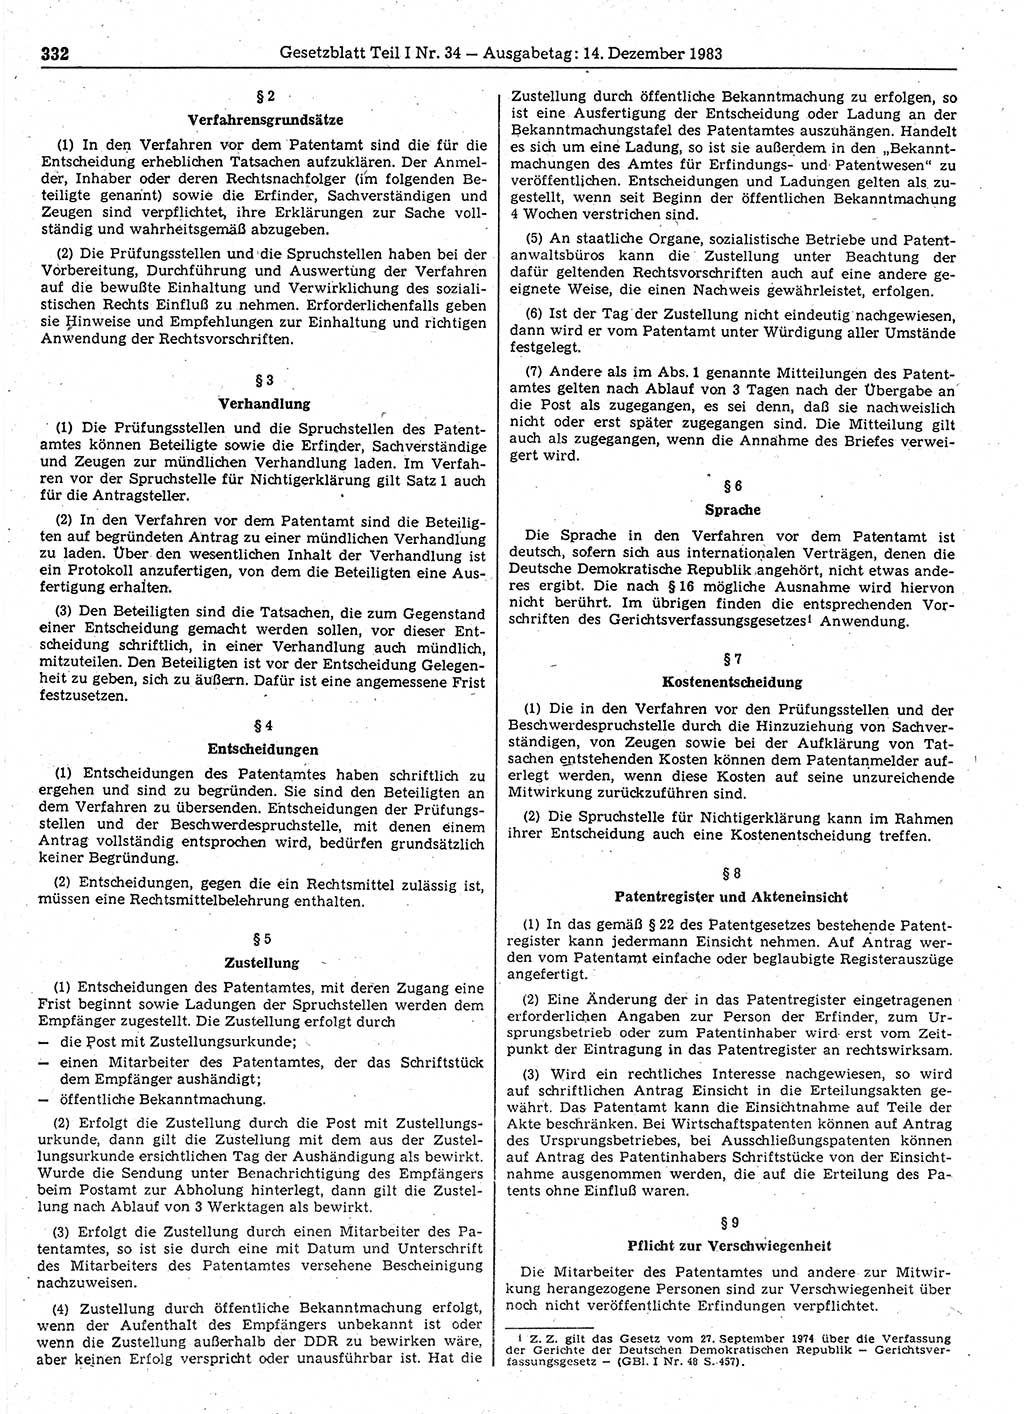 Gesetzblatt (GBl.) der Deutschen Demokratischen Republik (DDR) Teil Ⅰ 1983, Seite 332 (GBl. DDR Ⅰ 1983, S. 332)